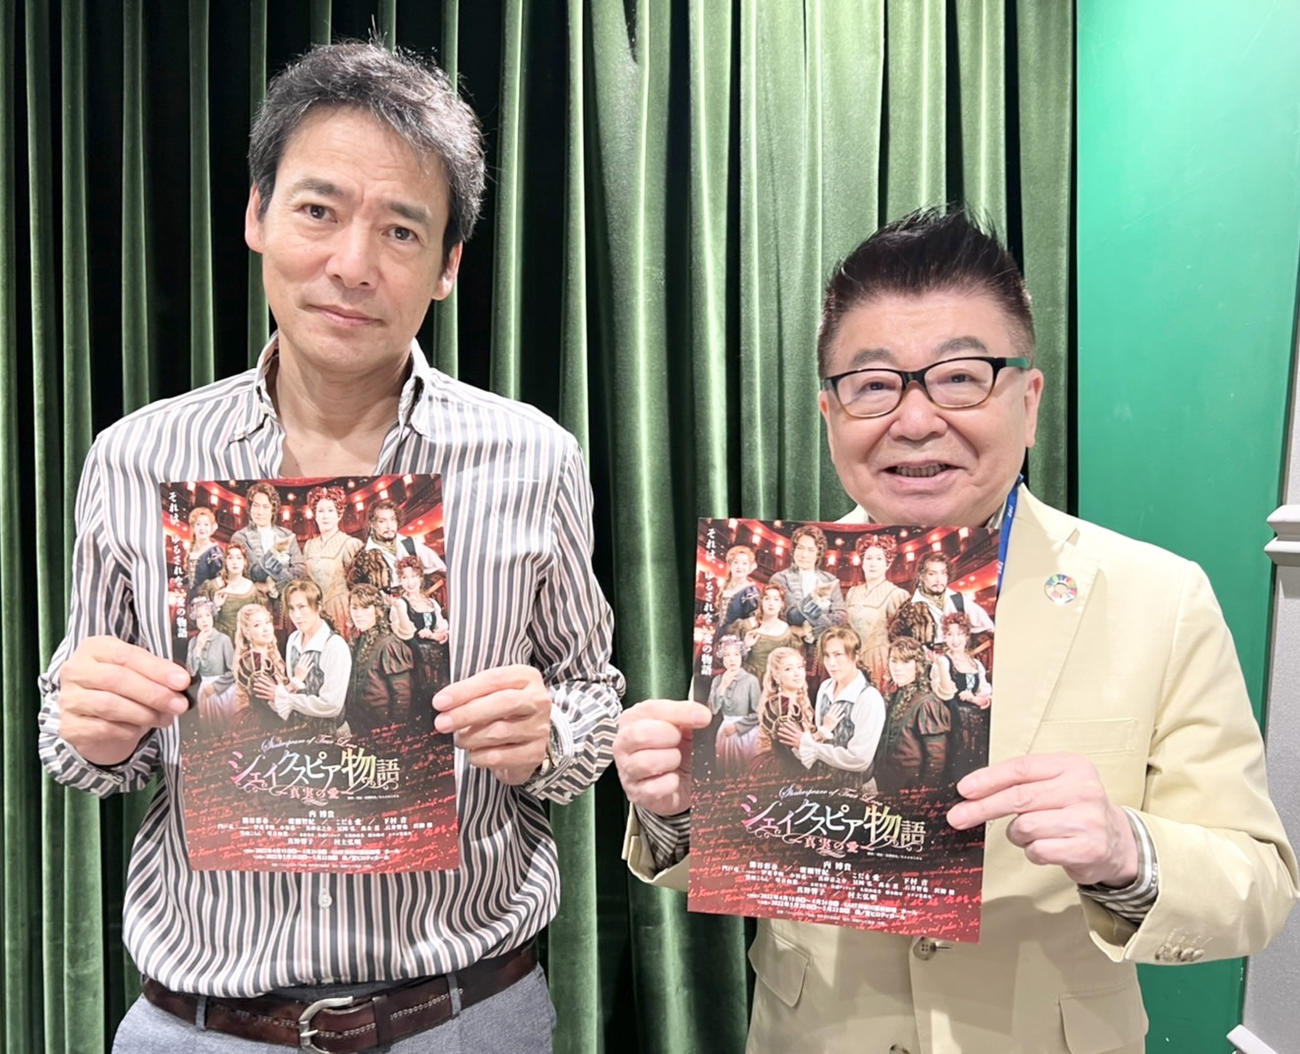 舞台「『シェイクスピア物語～真実の愛～』のパンフレットを手にする村上弘明(左)と生島ヒロシ